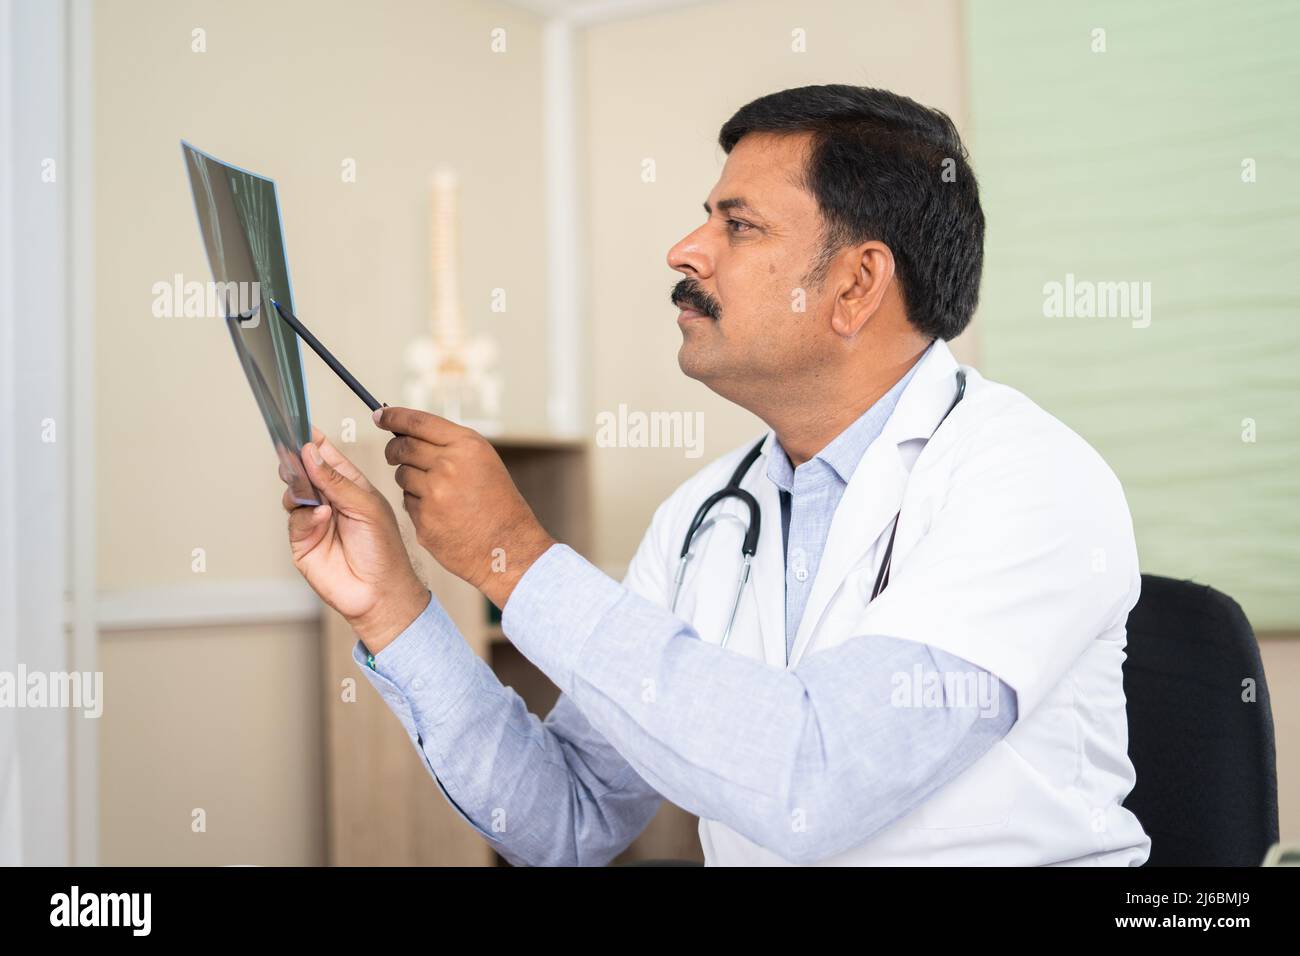 Medico in concentrazione in ospedale analisi radiografia report - concetto di trattamento sanitario, diagnosi e competenza medica Foto Stock